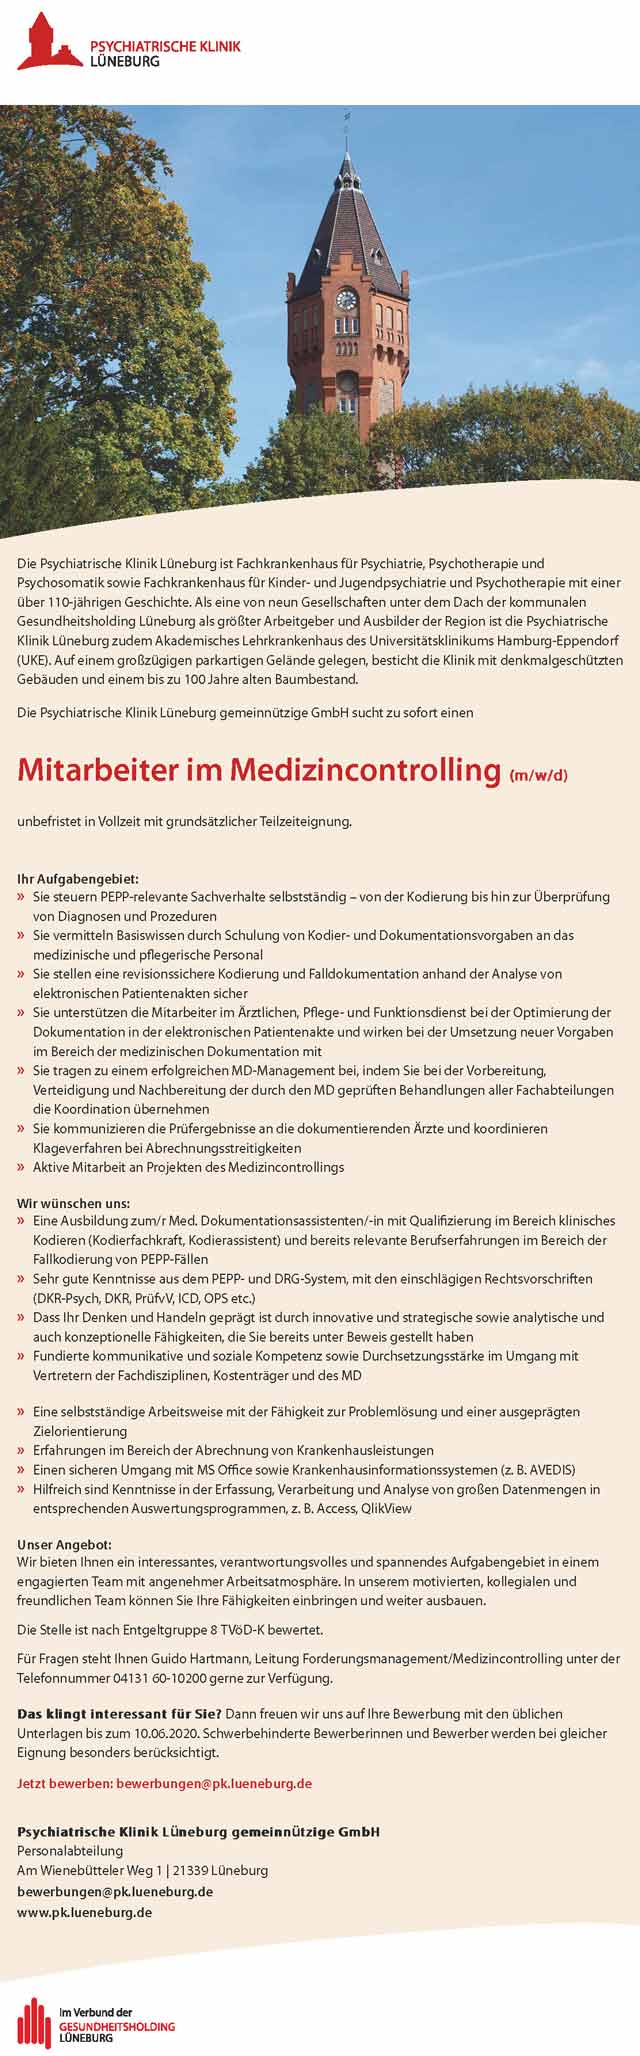 Psychiatrische Klinik Lüneburg gGmbH: Mitarbeiter im Medizincontrolling (m/w/d)